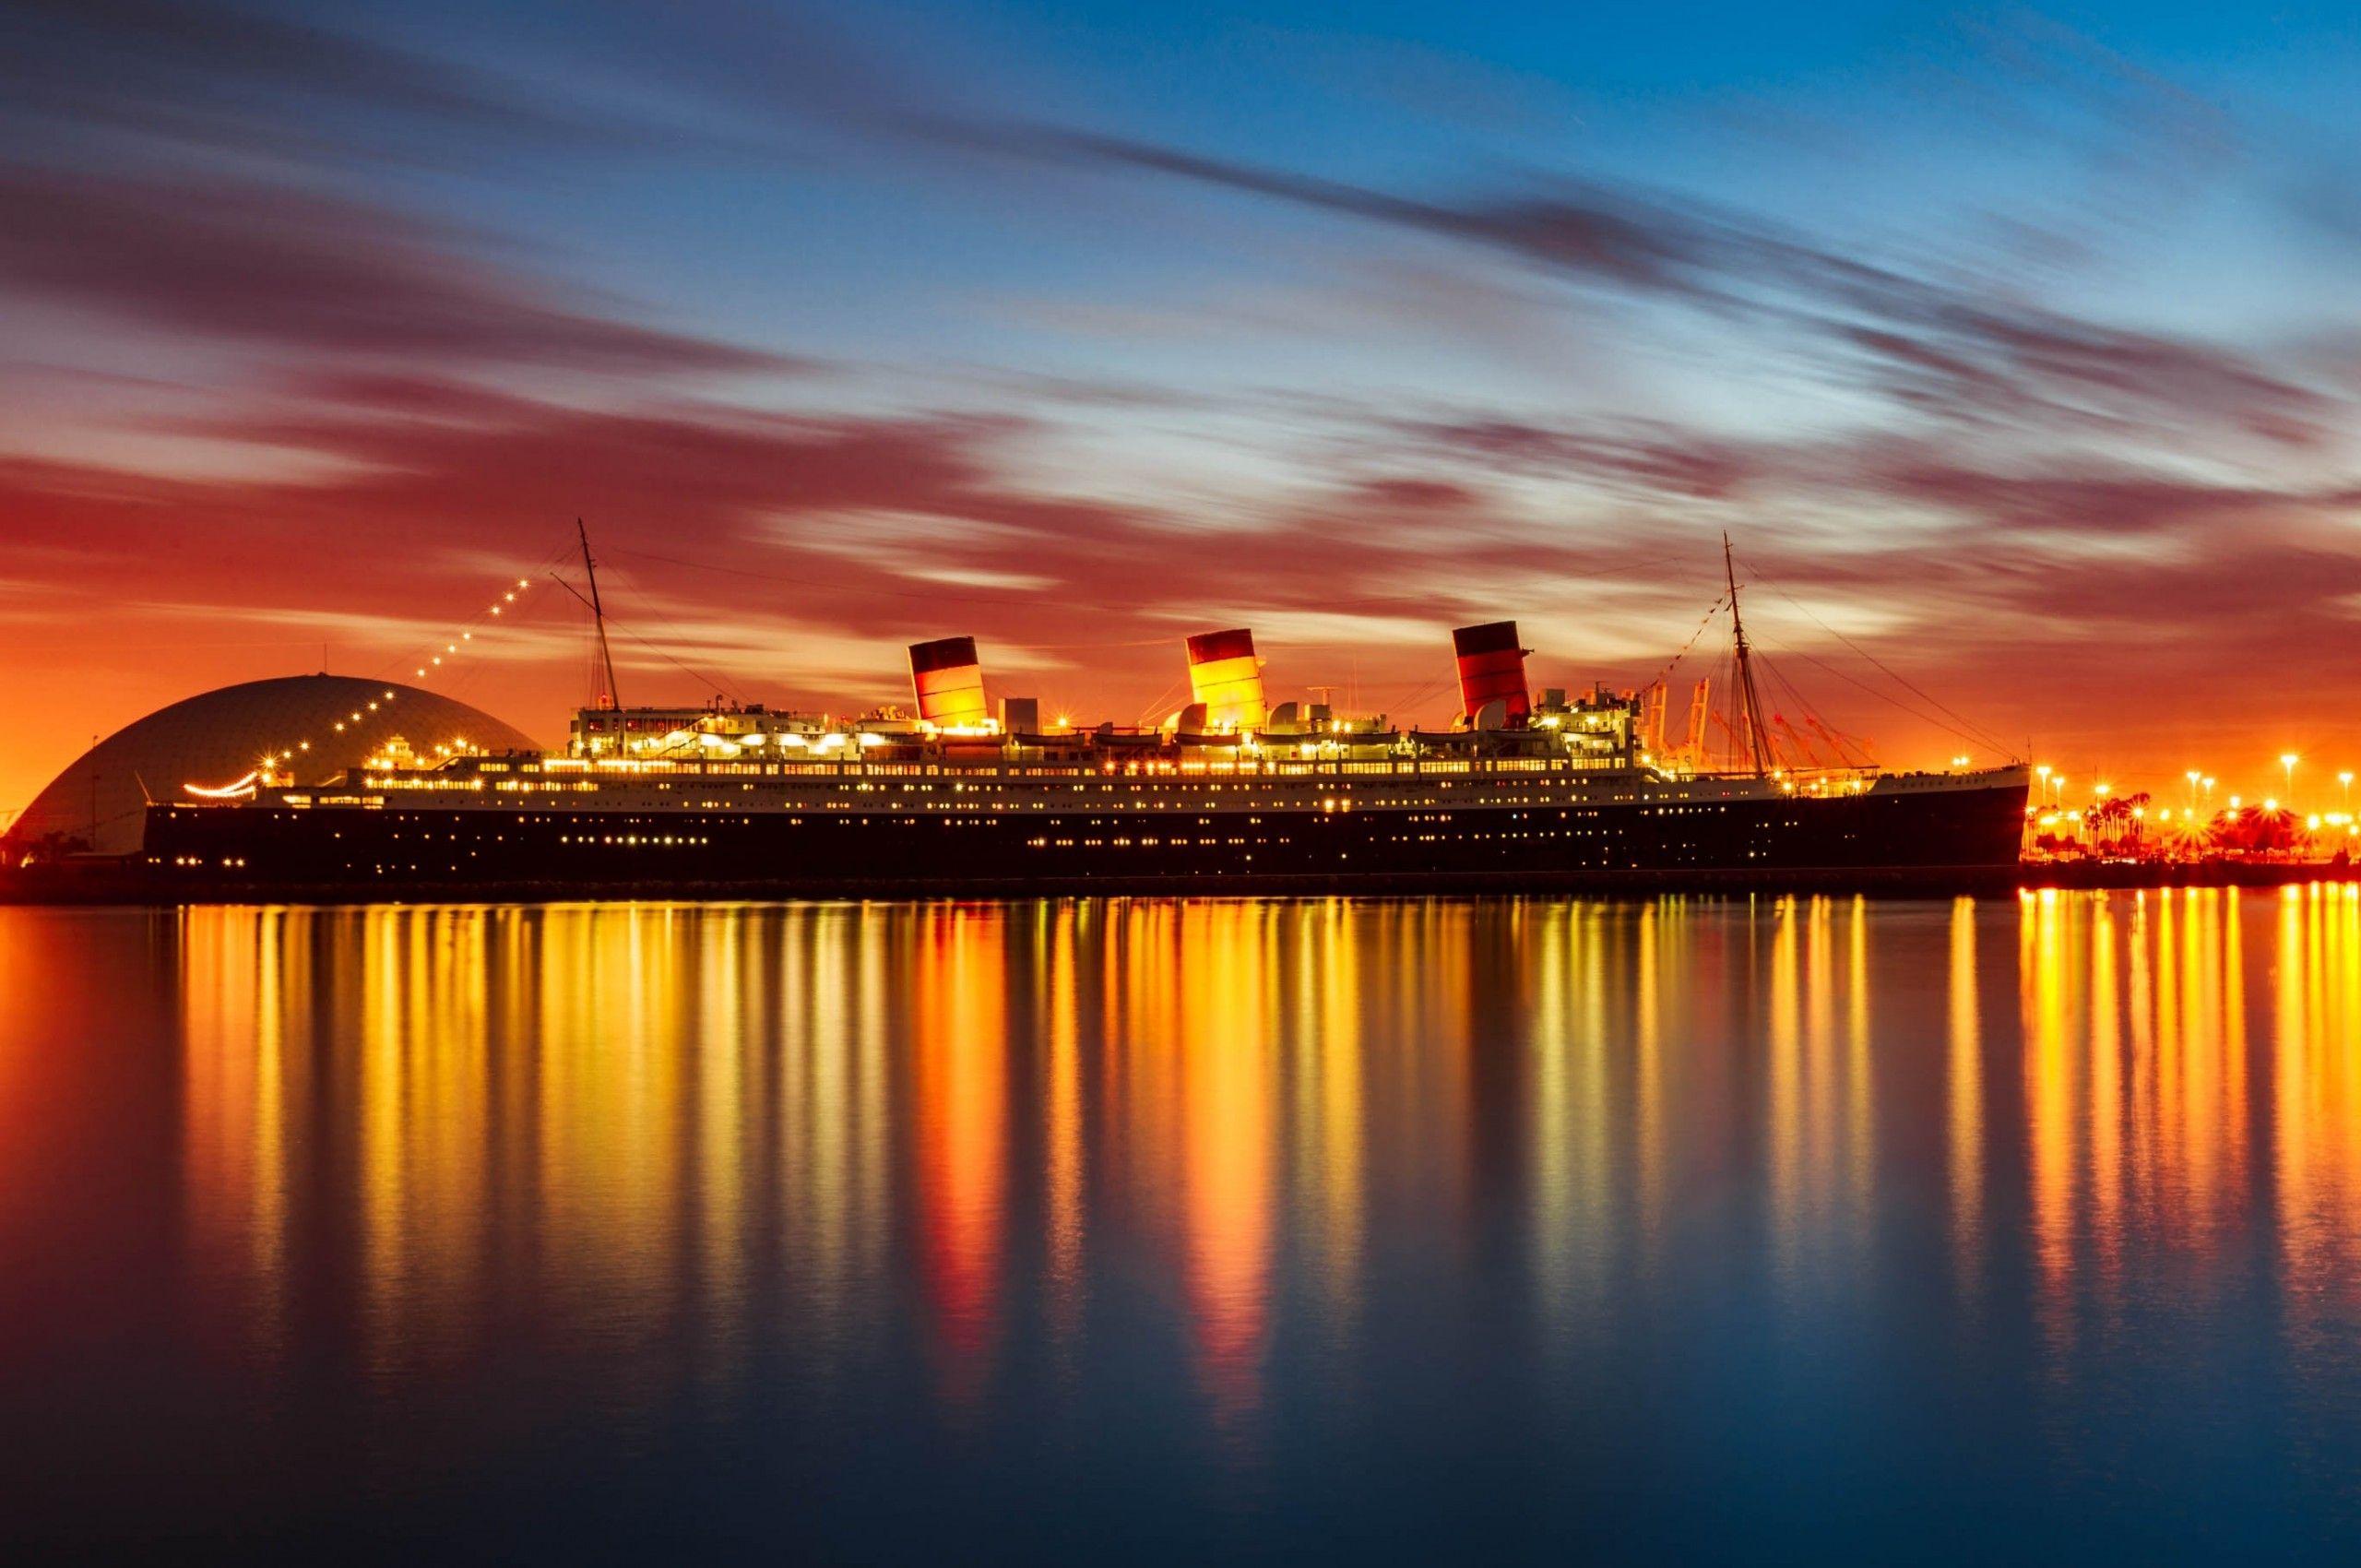 cruise ship sunset images